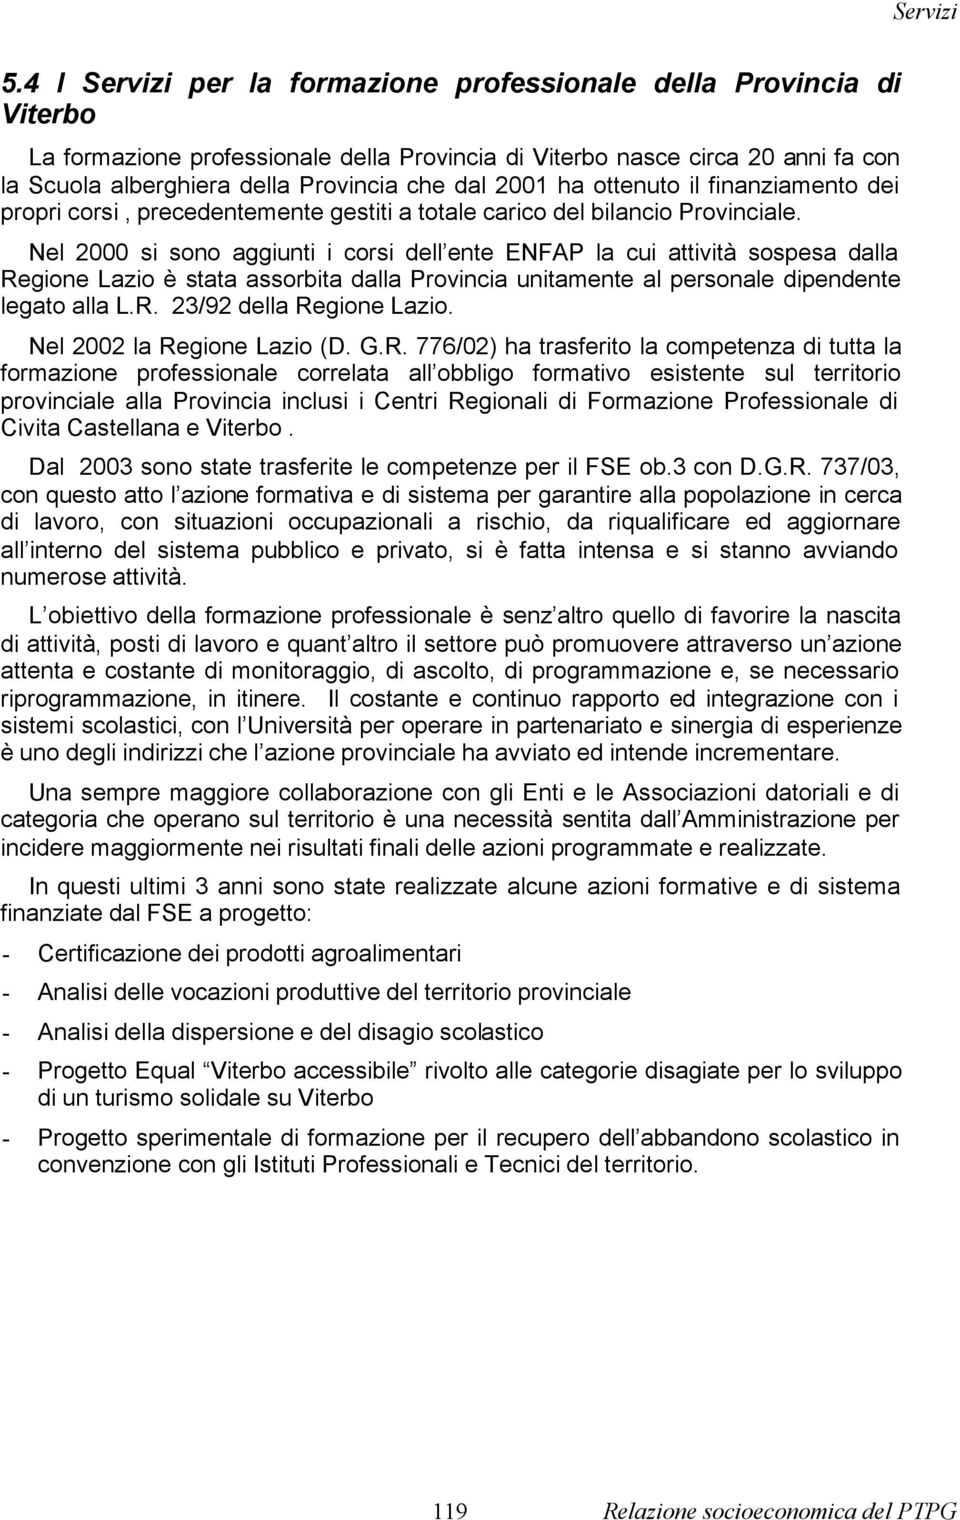 Nel 2000 si sono aggiunti i corsi dell ente ENFAP la cui attività sospesa dalla Regione Lazio è stata assorbita dalla Provincia unitamente al personale dipendente legato alla L.R. 23/92 della Regione Lazio.